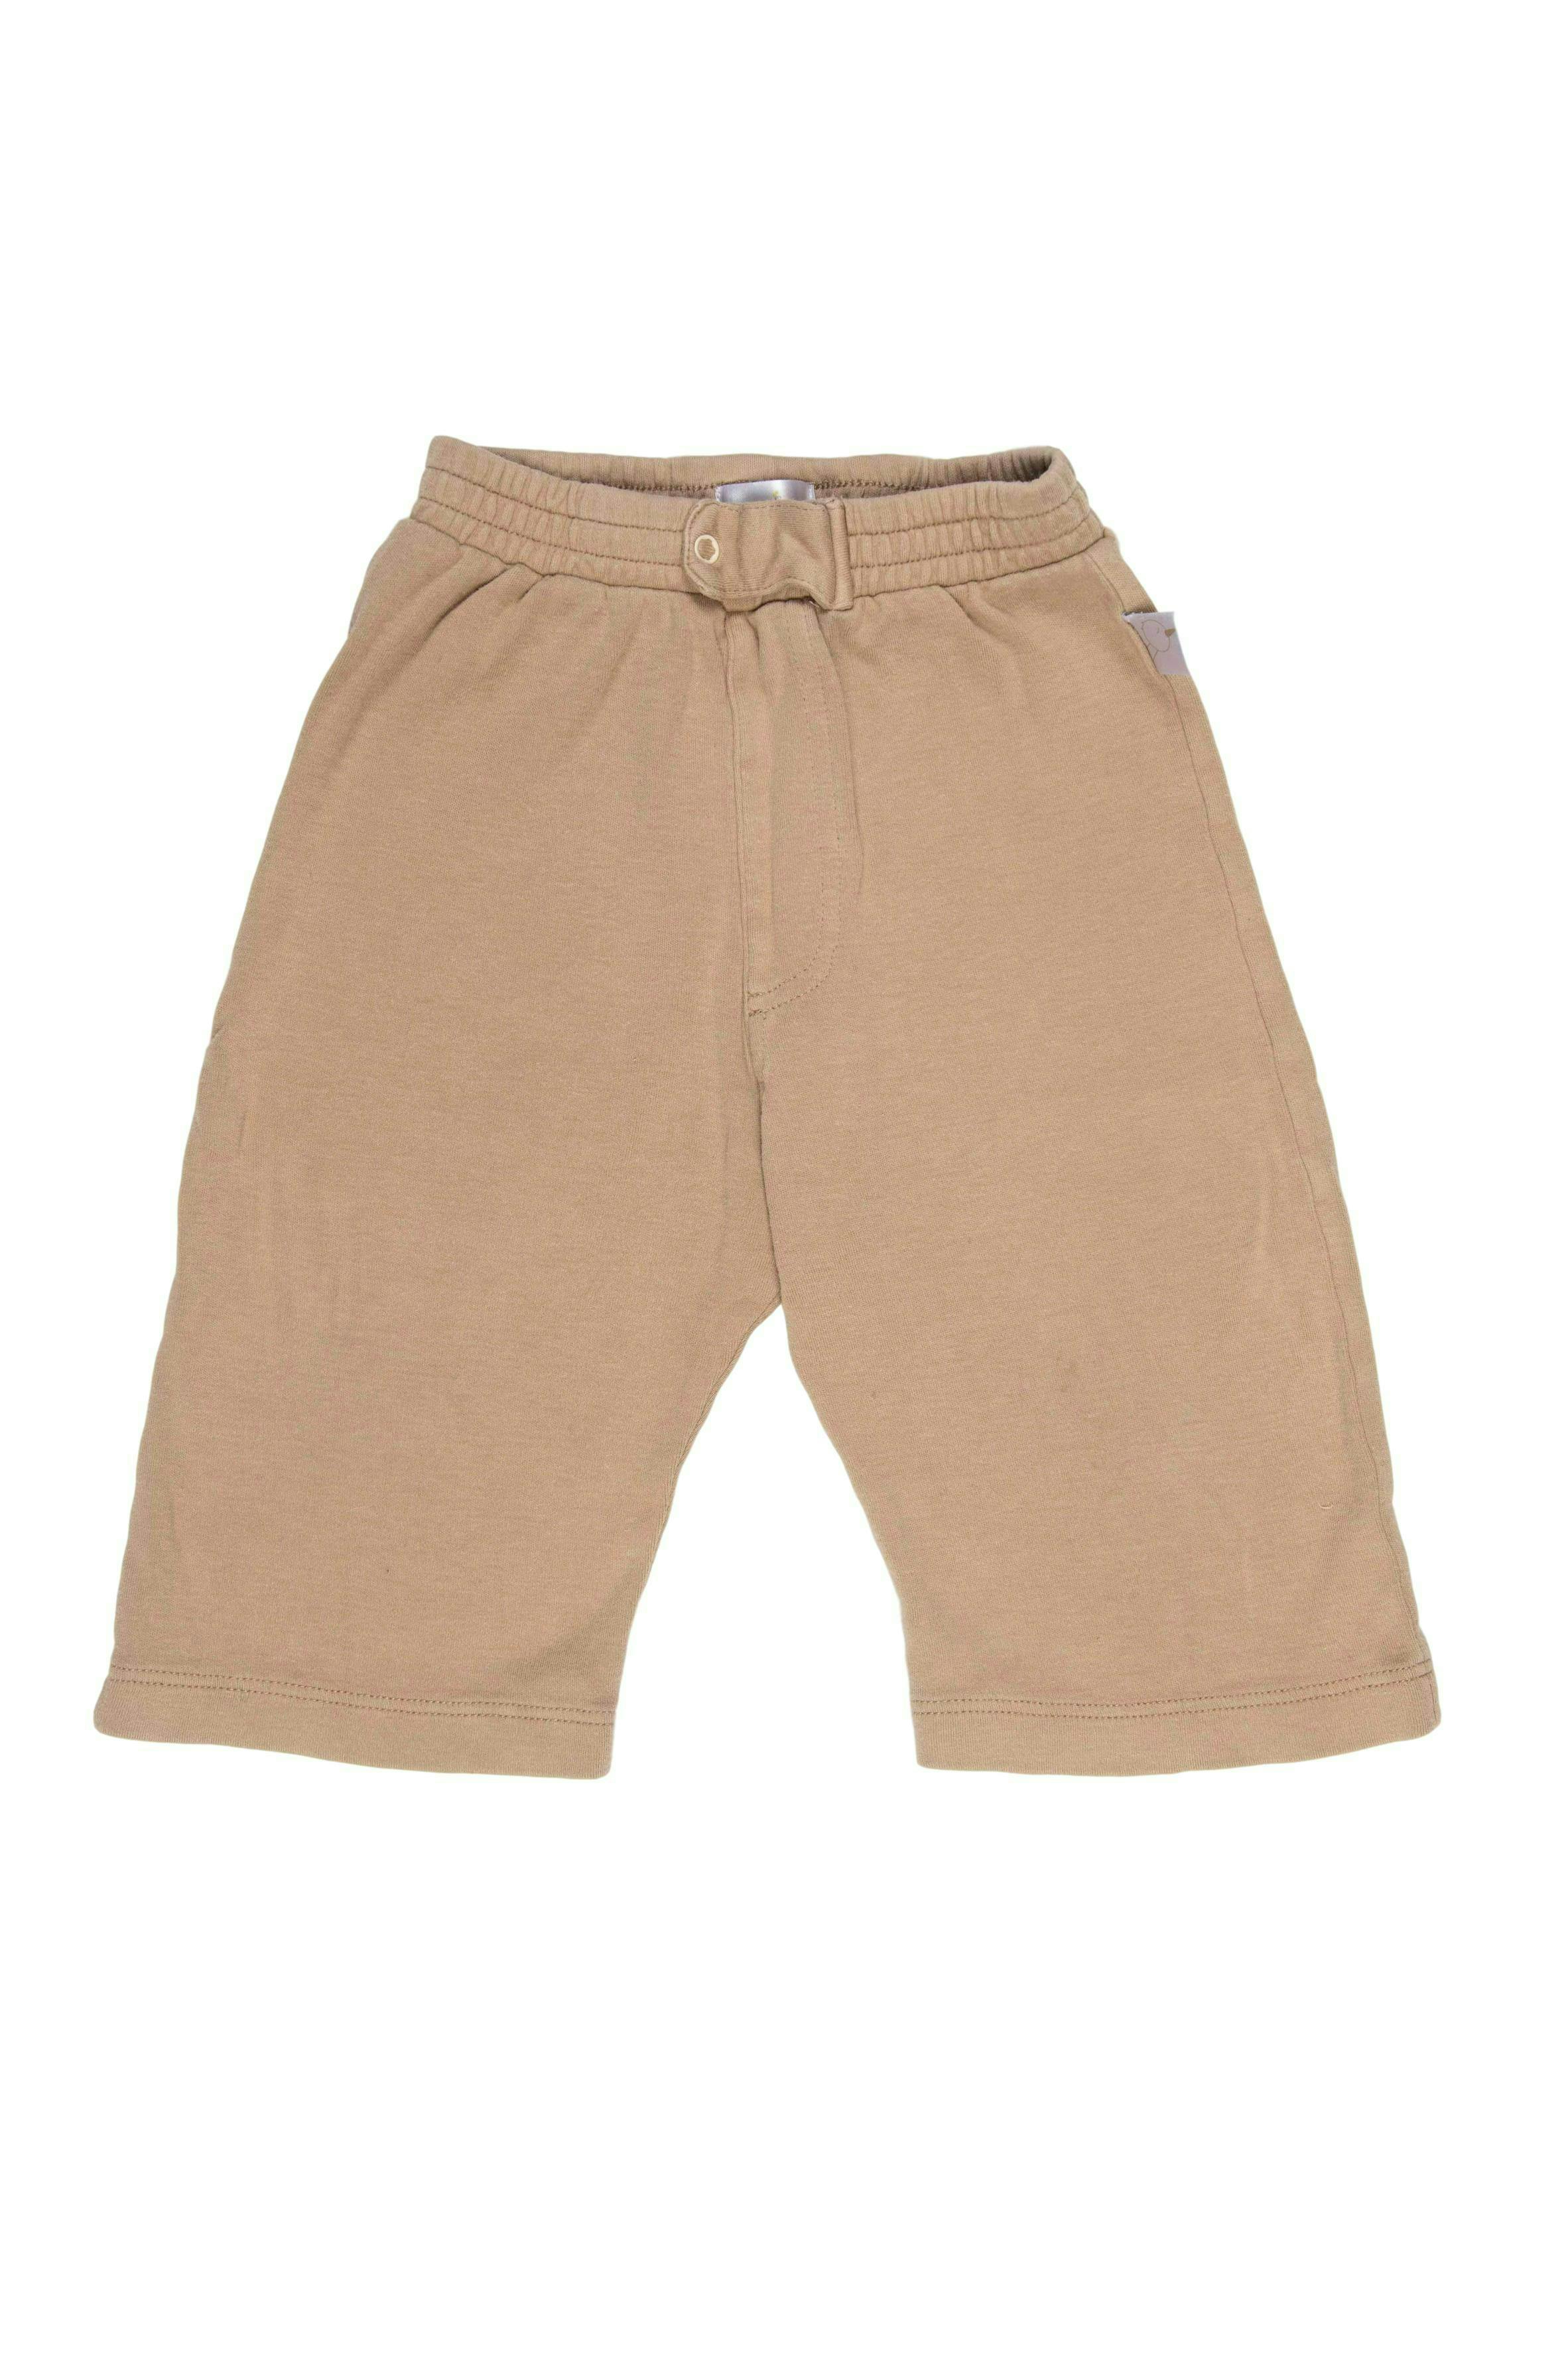 Pantalón marrón claro de algodón, broche delantero, suelto y corto. - Baby Zoo